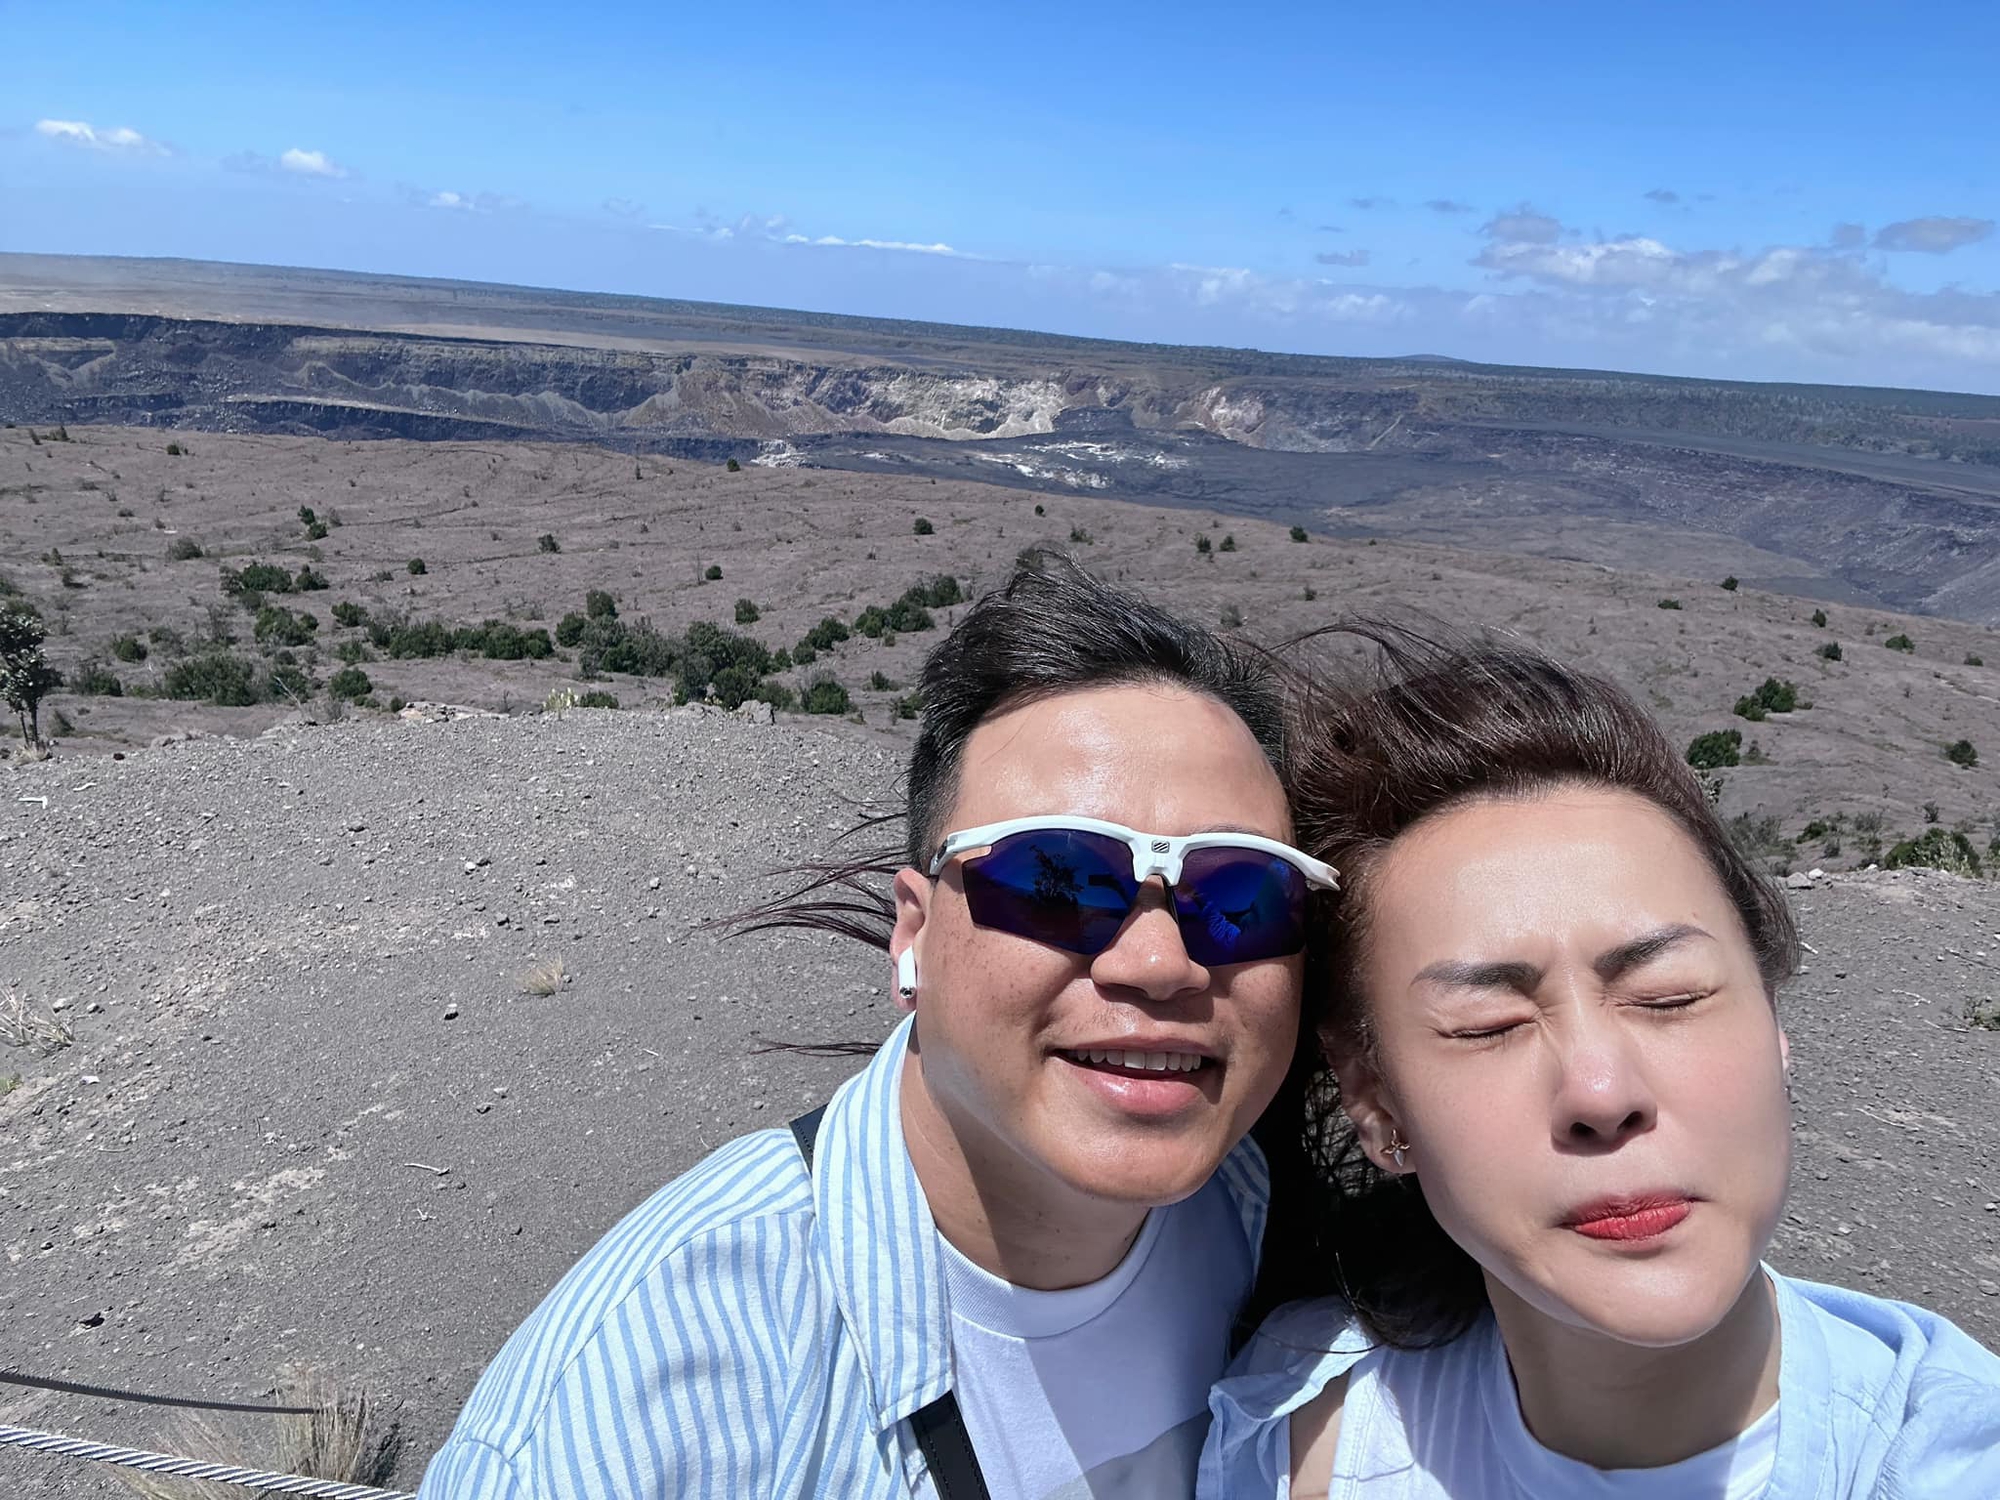 Shark Bình và vợ thuê trực thăng ngắm miệng núi lửa và cái kết khiến dân tình "cười ngất"